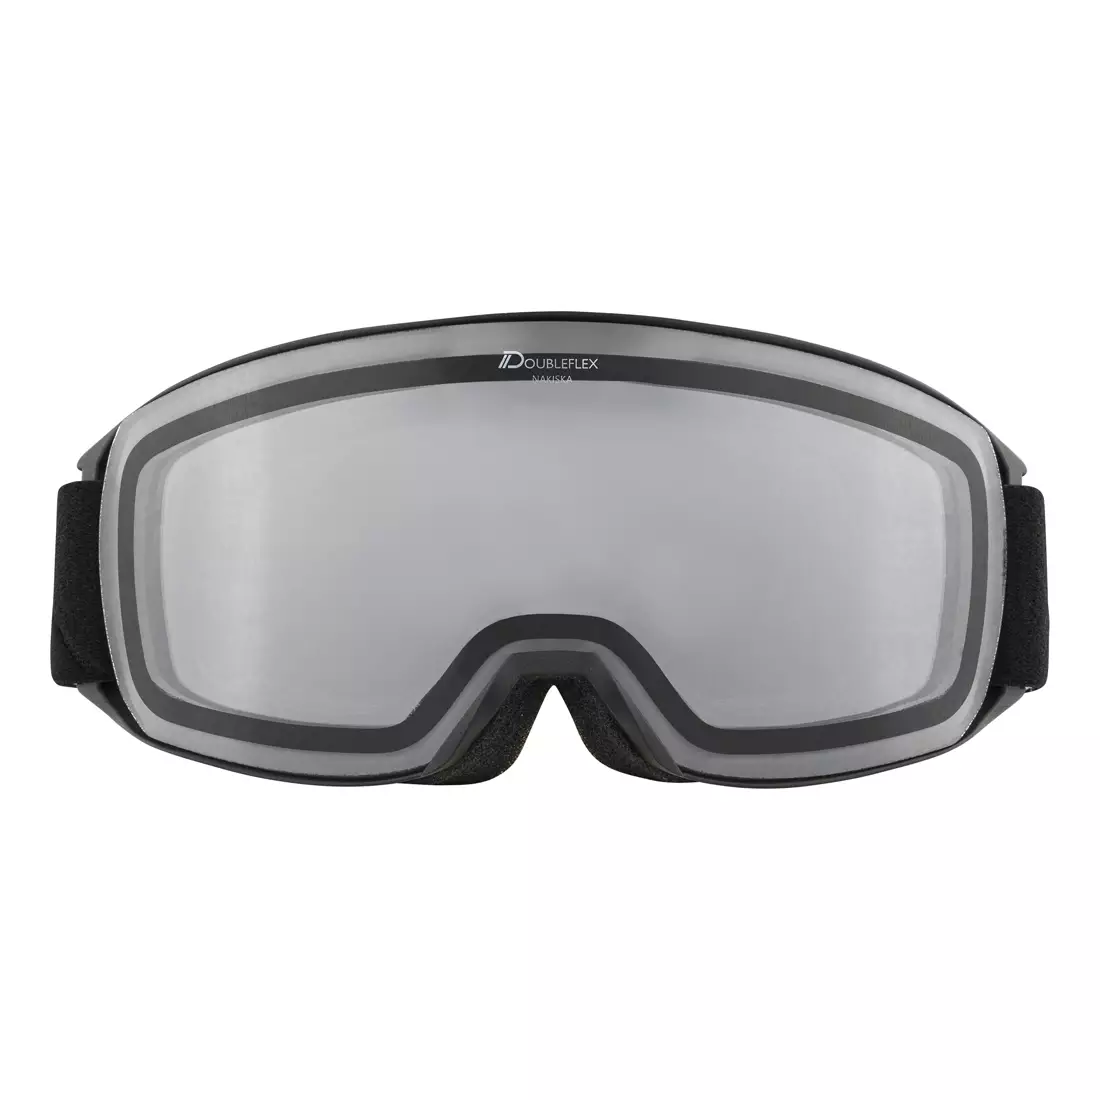 ALPINA ski / snowboard goggles CLEAR M40 NAKISKA black matt S0A7281133